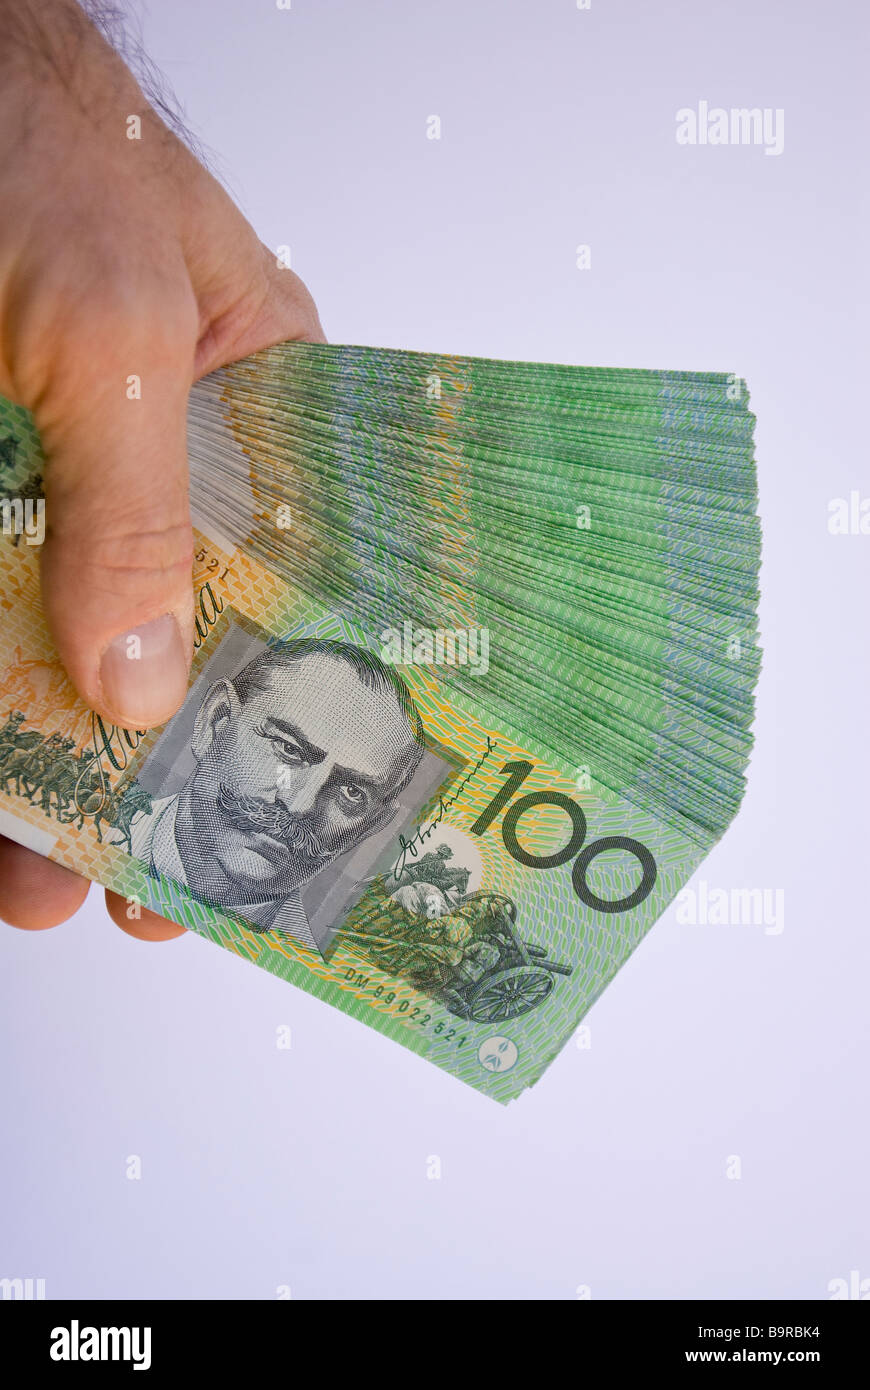 A fan of A$20,000 $20,000 twenty thousand Australian dollars in Photo - Alamy